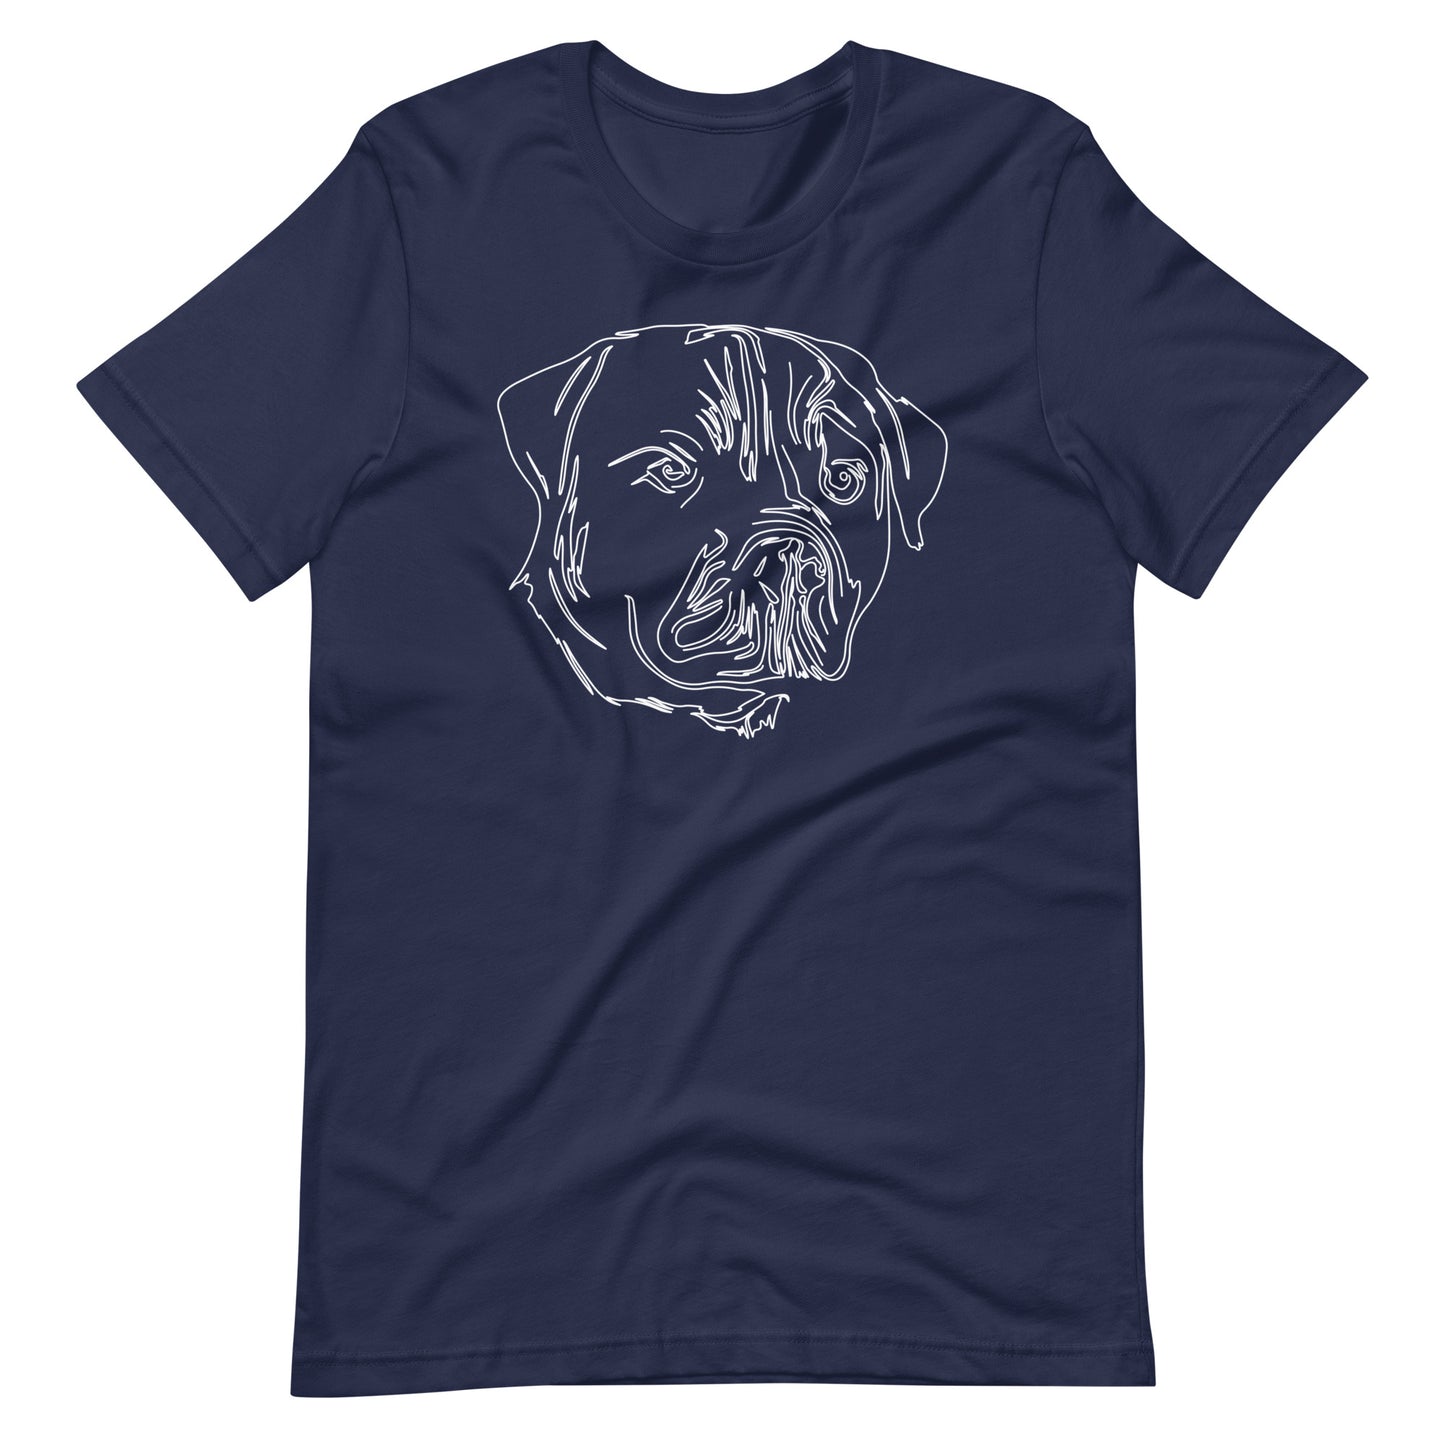 White line Rottweiler face on unisex navy t-shirt